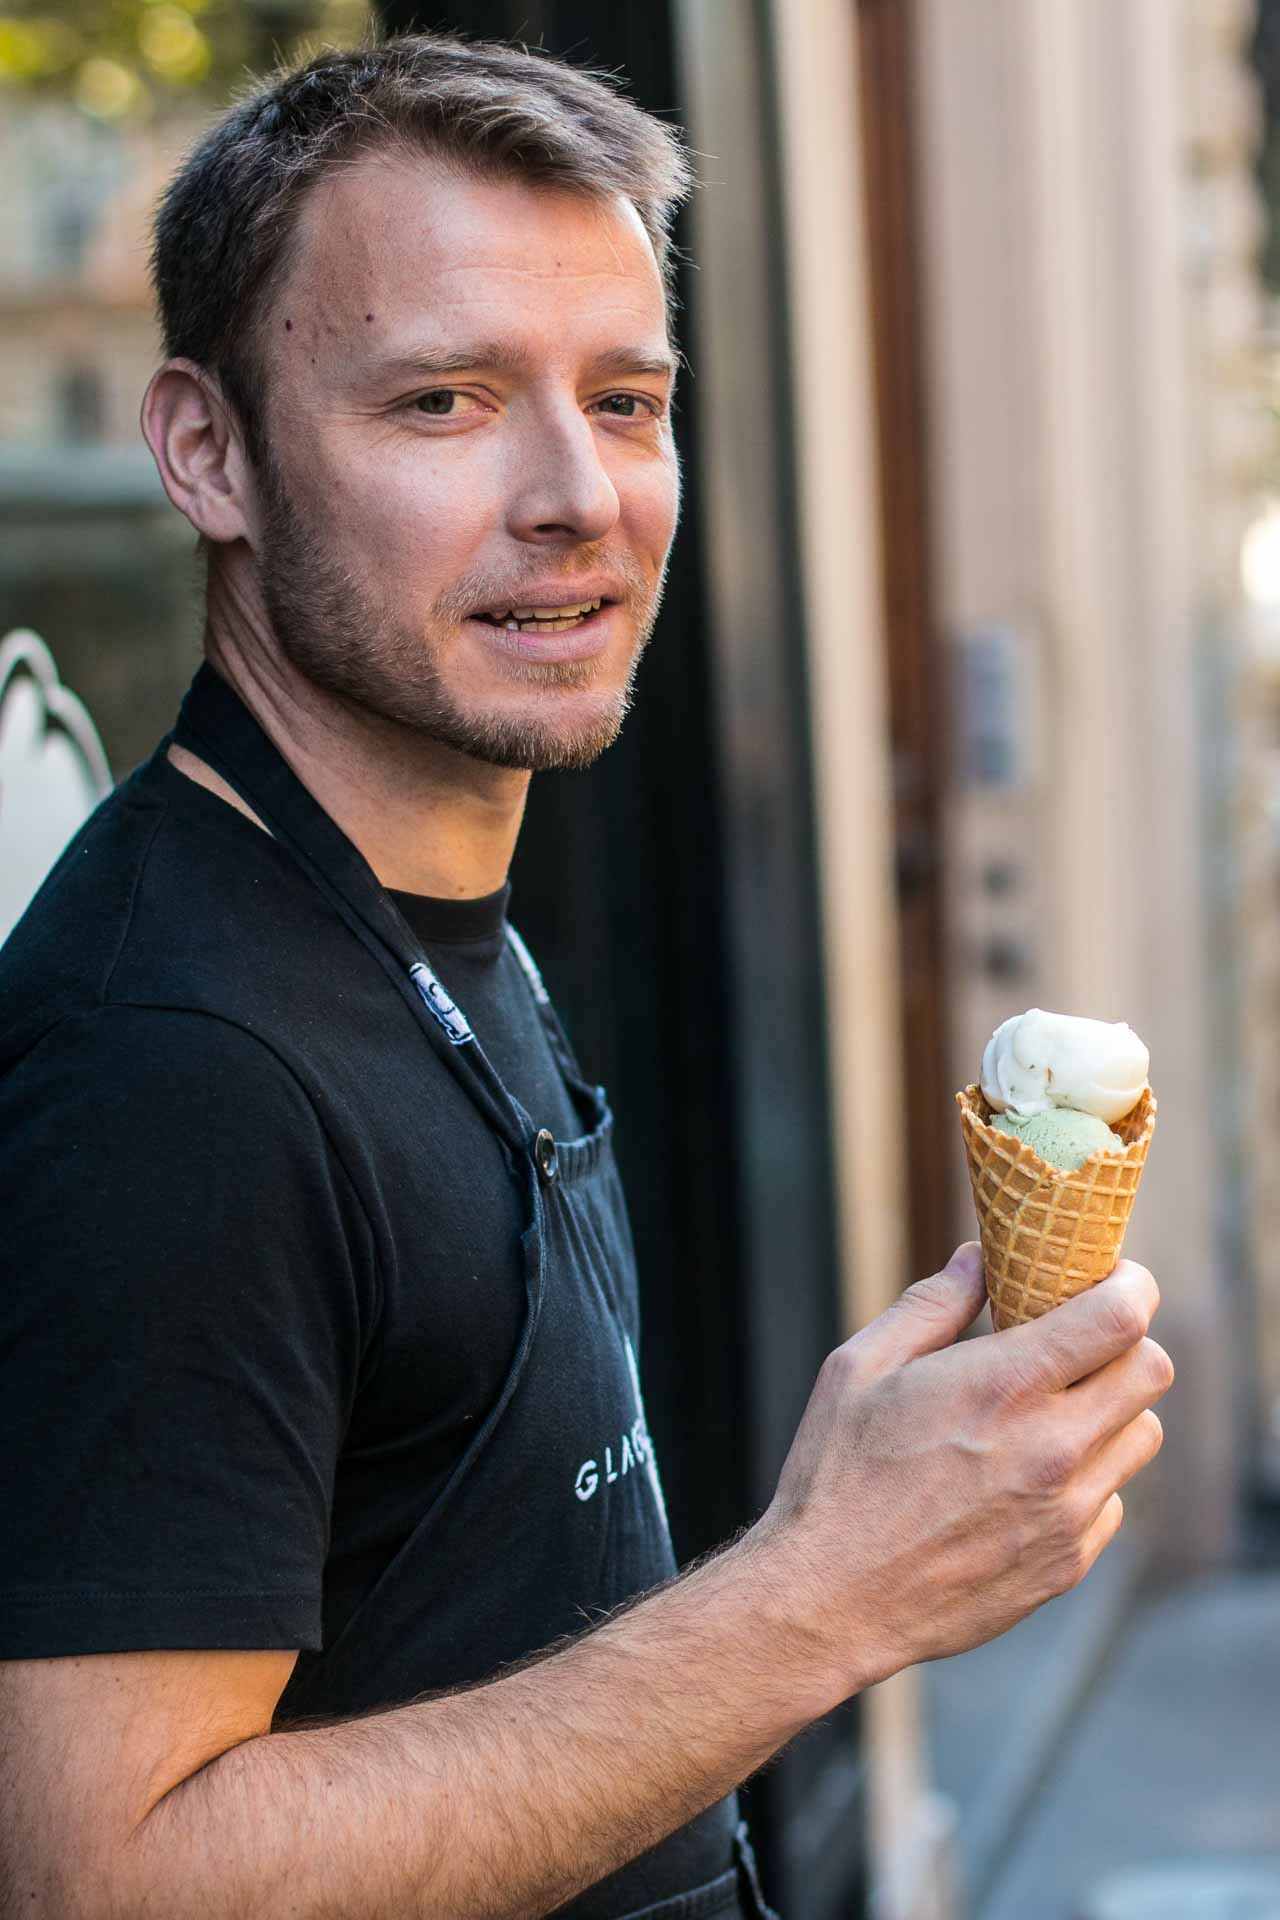 Glaces Glazed Ice Cream Shop in Paris